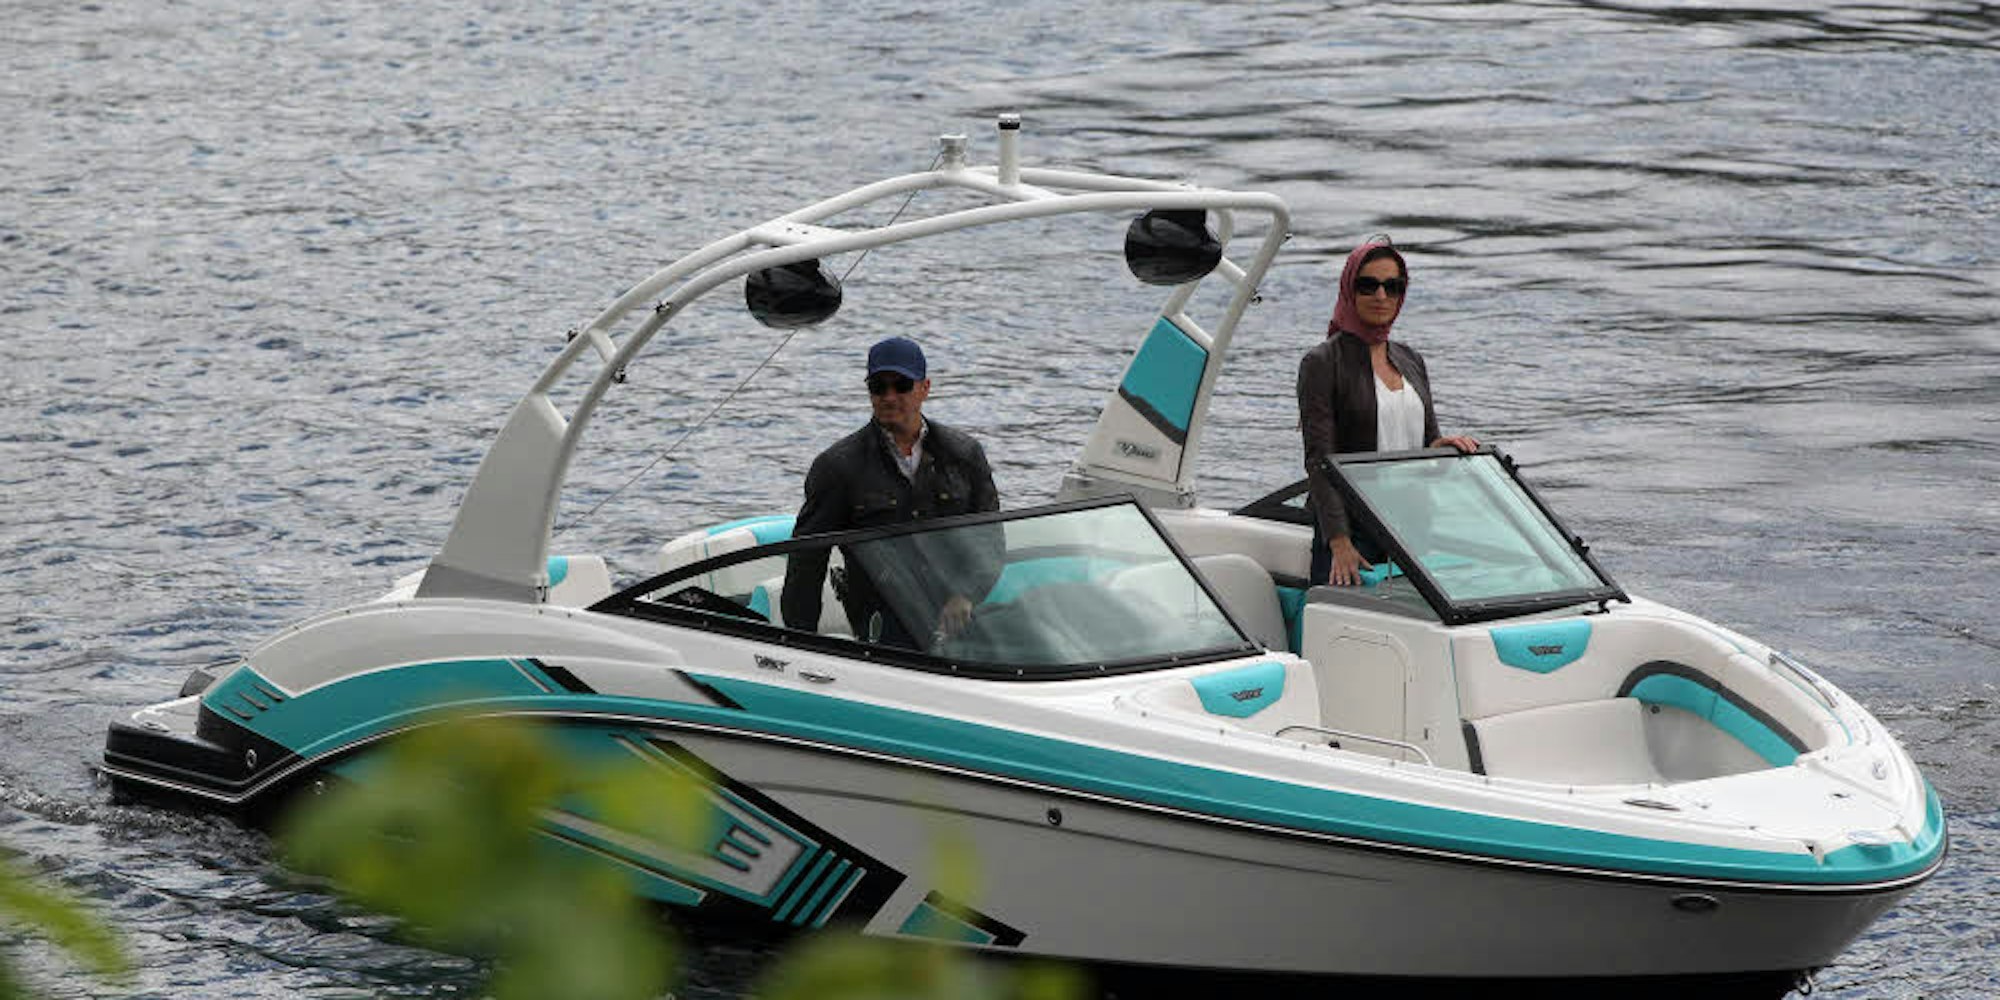 Ein seltenes Bild: Dank einer Sondergenehmigung durften die Schauspieler mit dem Motorboot auf dem Rursee fahren.